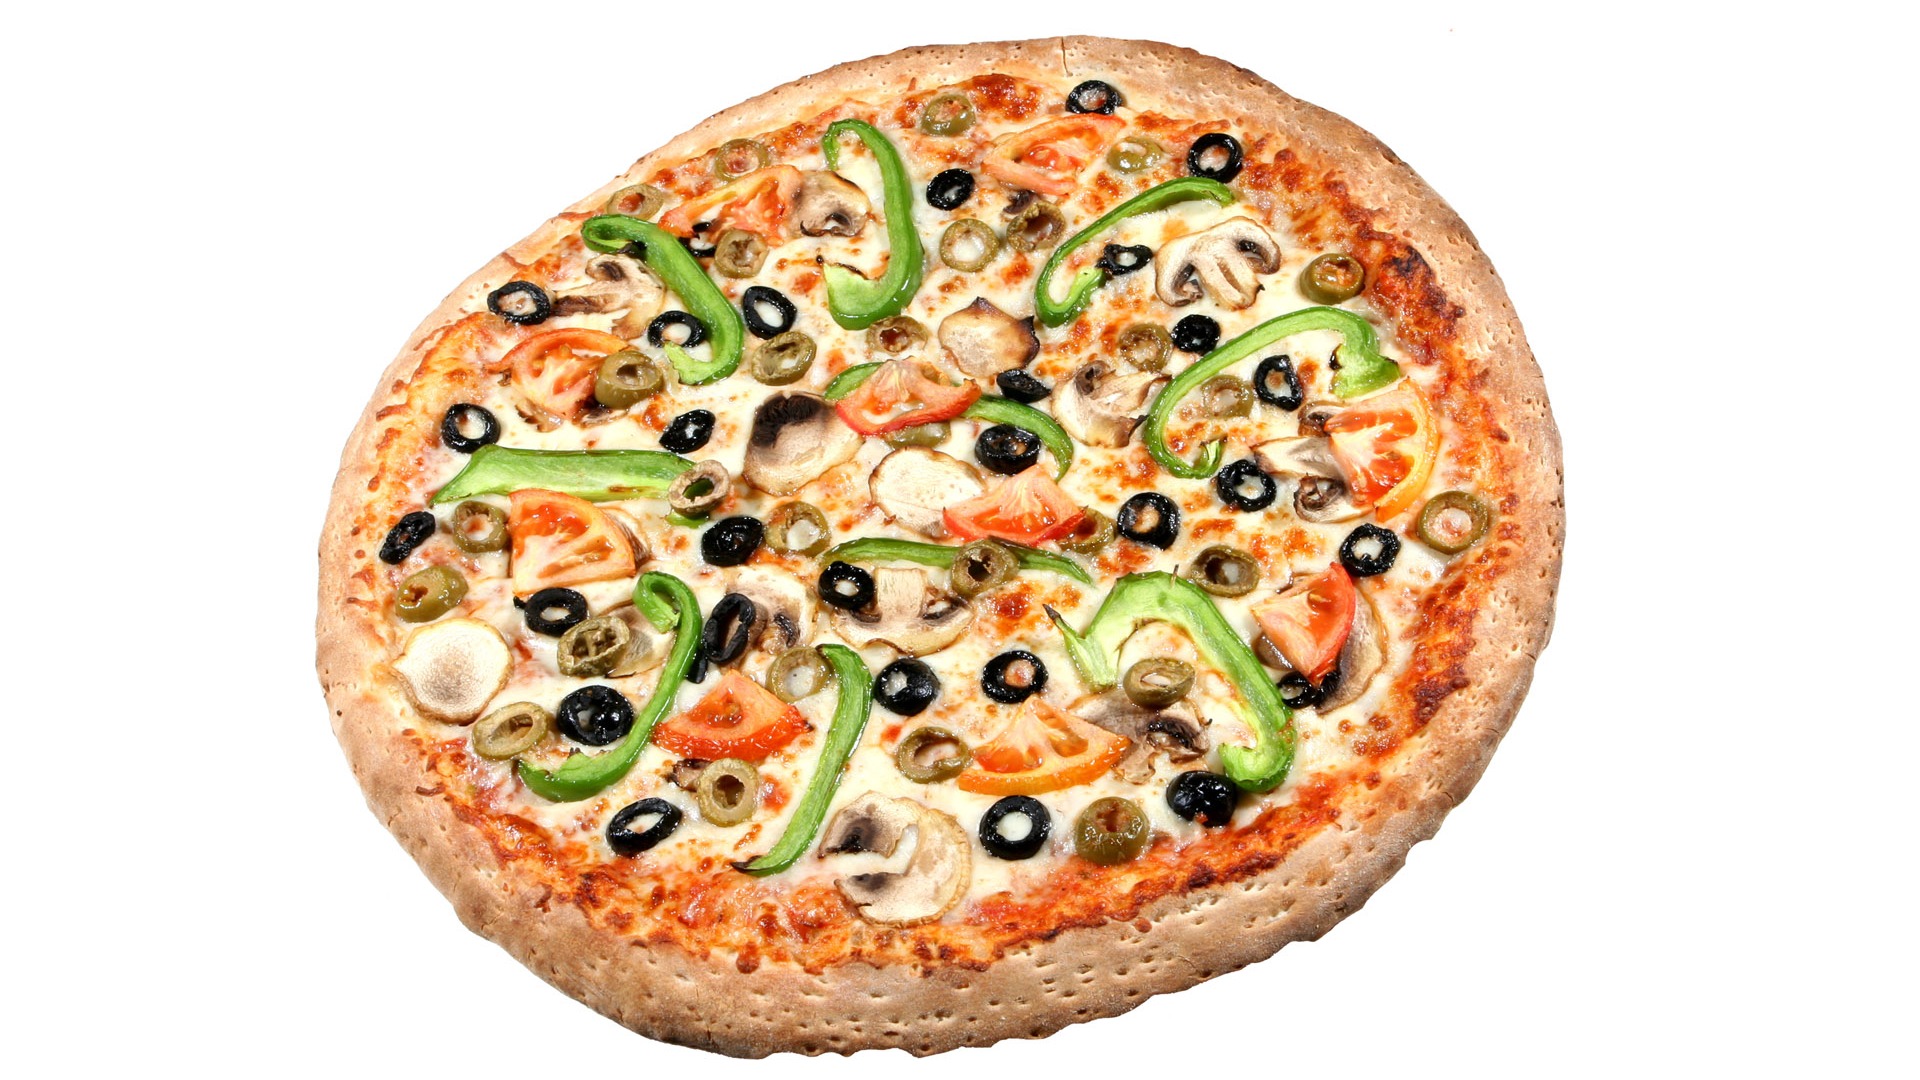 Fondos de pizzerías de Alimentos (4) #8 - 1920x1080